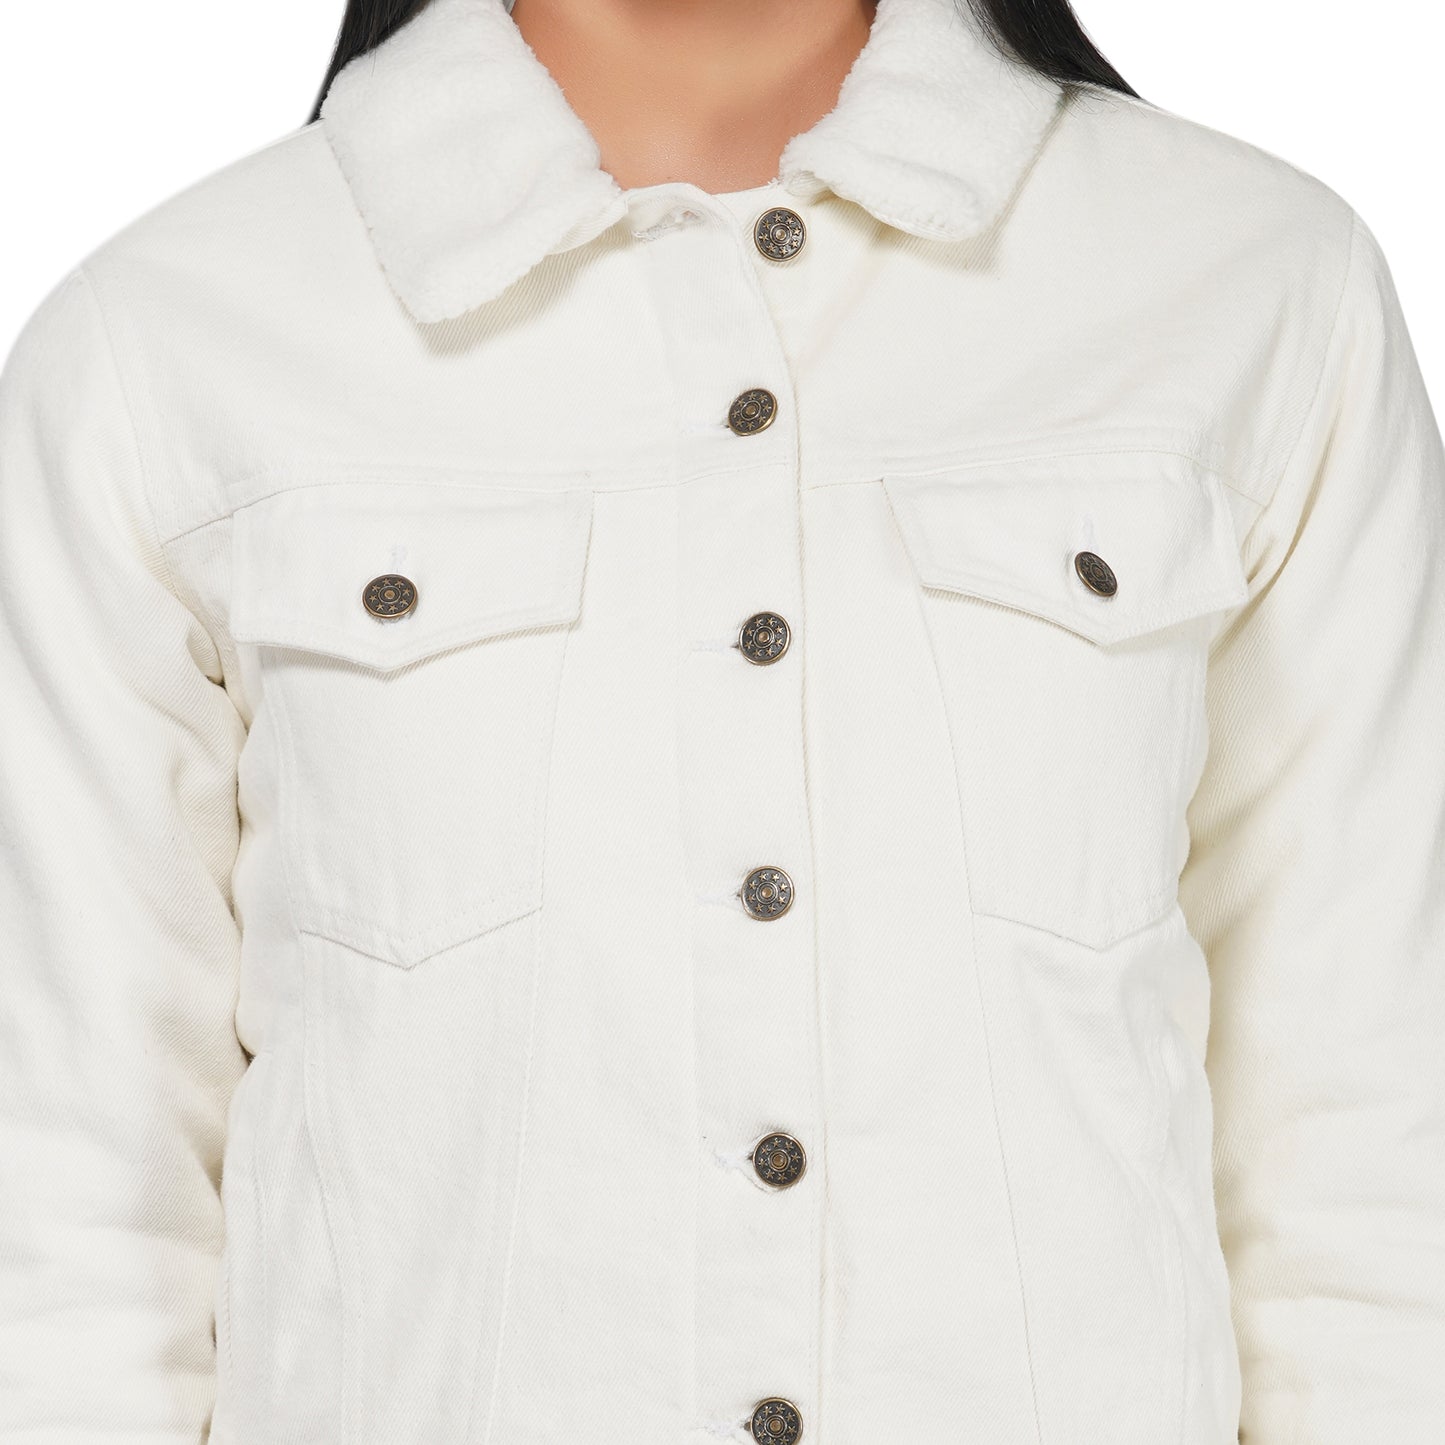 SLAY. Women's Off-white Denim Jacket with Faux-fur Lining-clothing-to-slay.myshopify.com-Denim Jacket